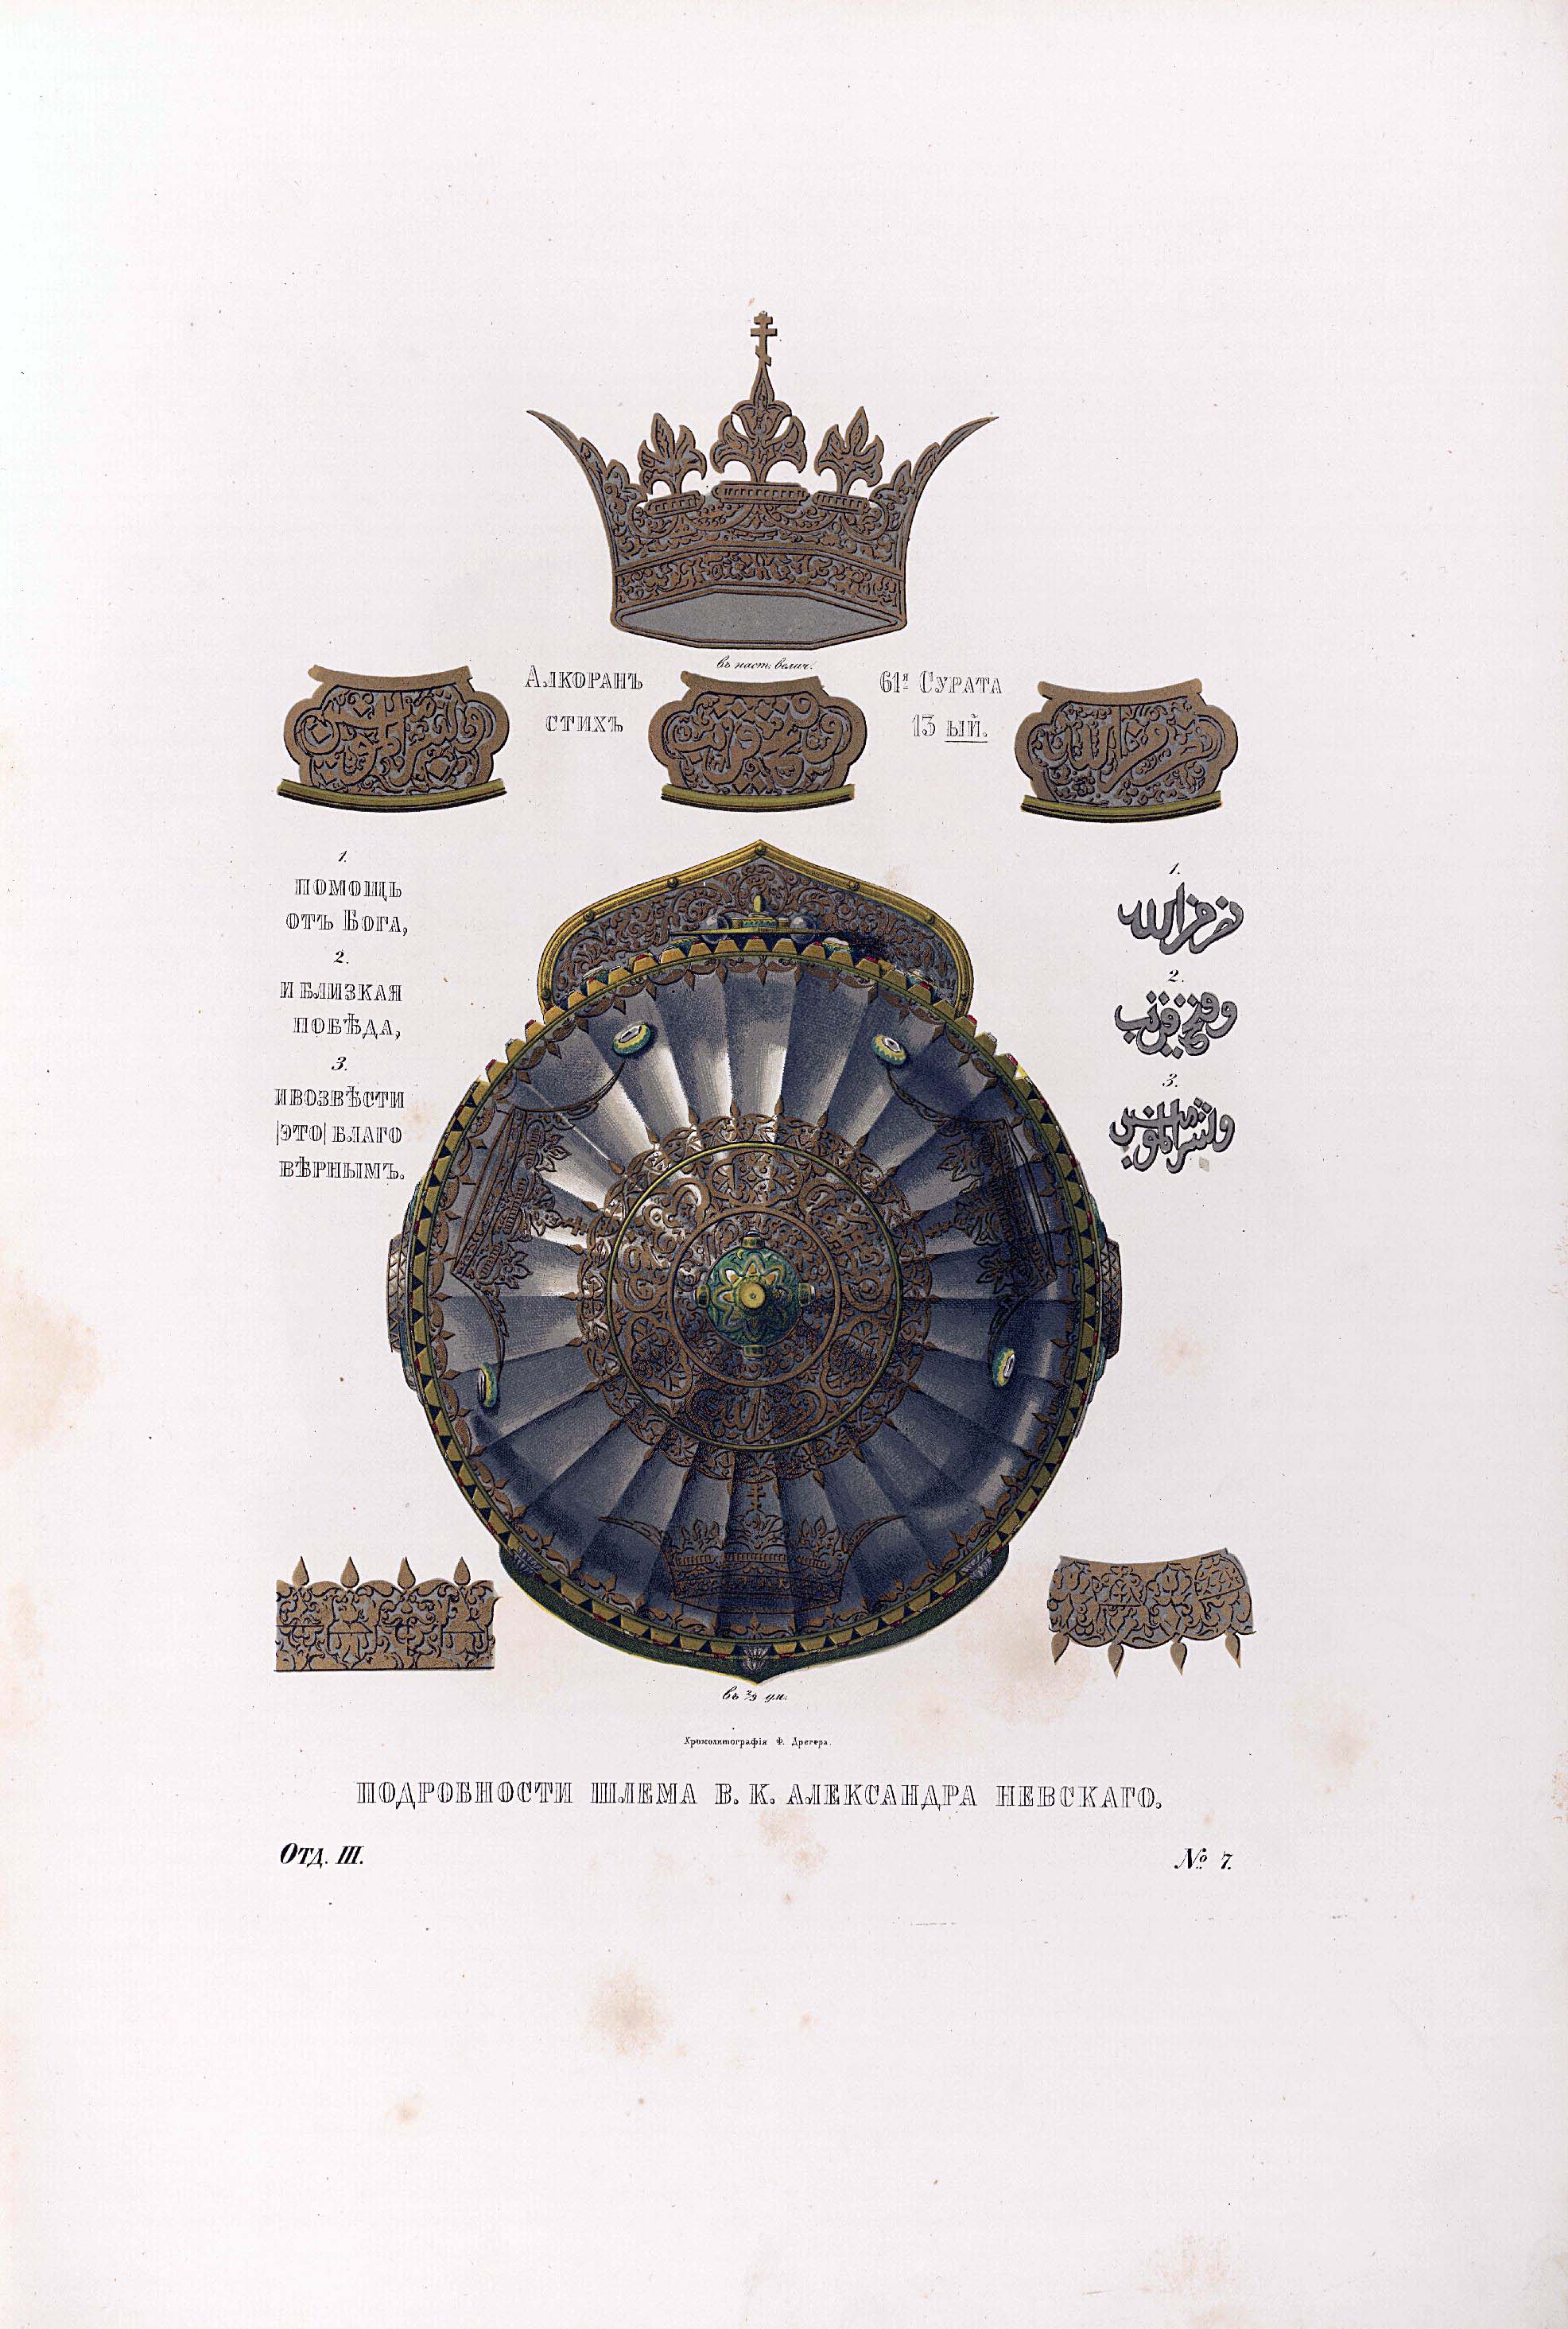 «Большая ерихонка» Царя Михаила Фёдоровича, шлем Александра Невского